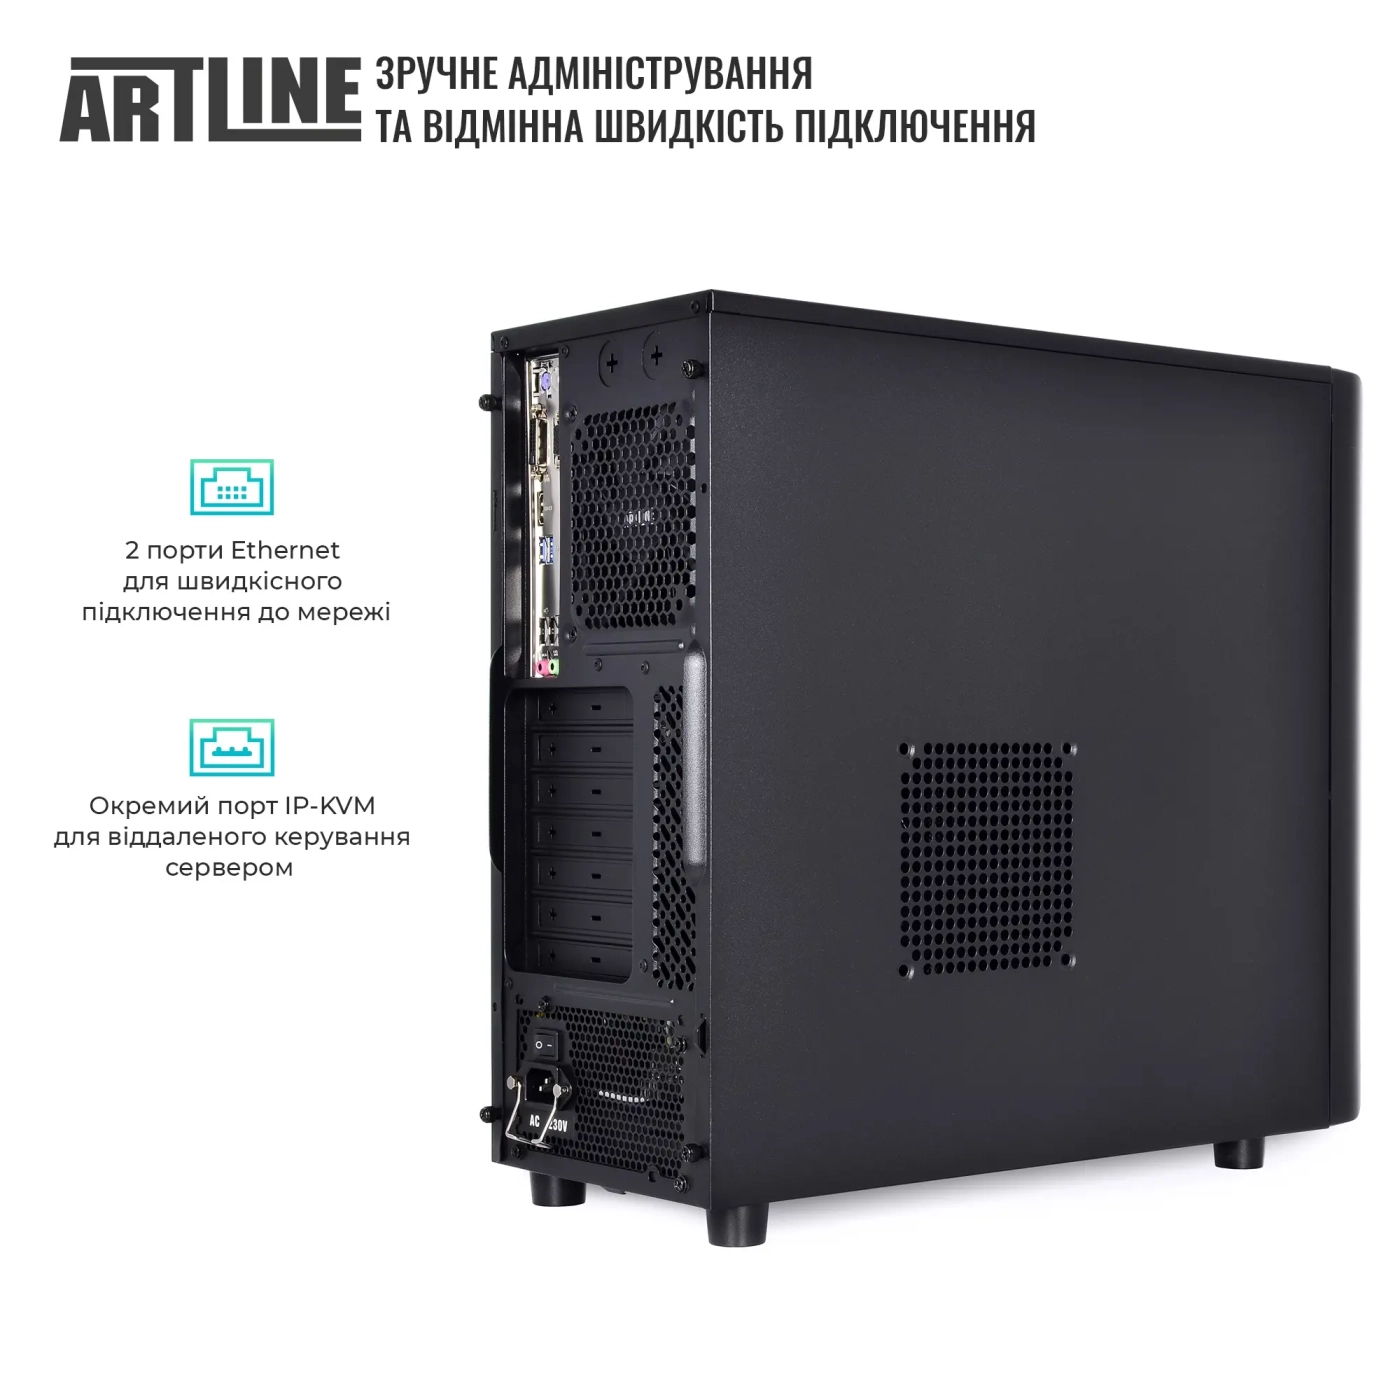 Купить Сервер ARTLINE Business T36 (T36v27) - фото 4